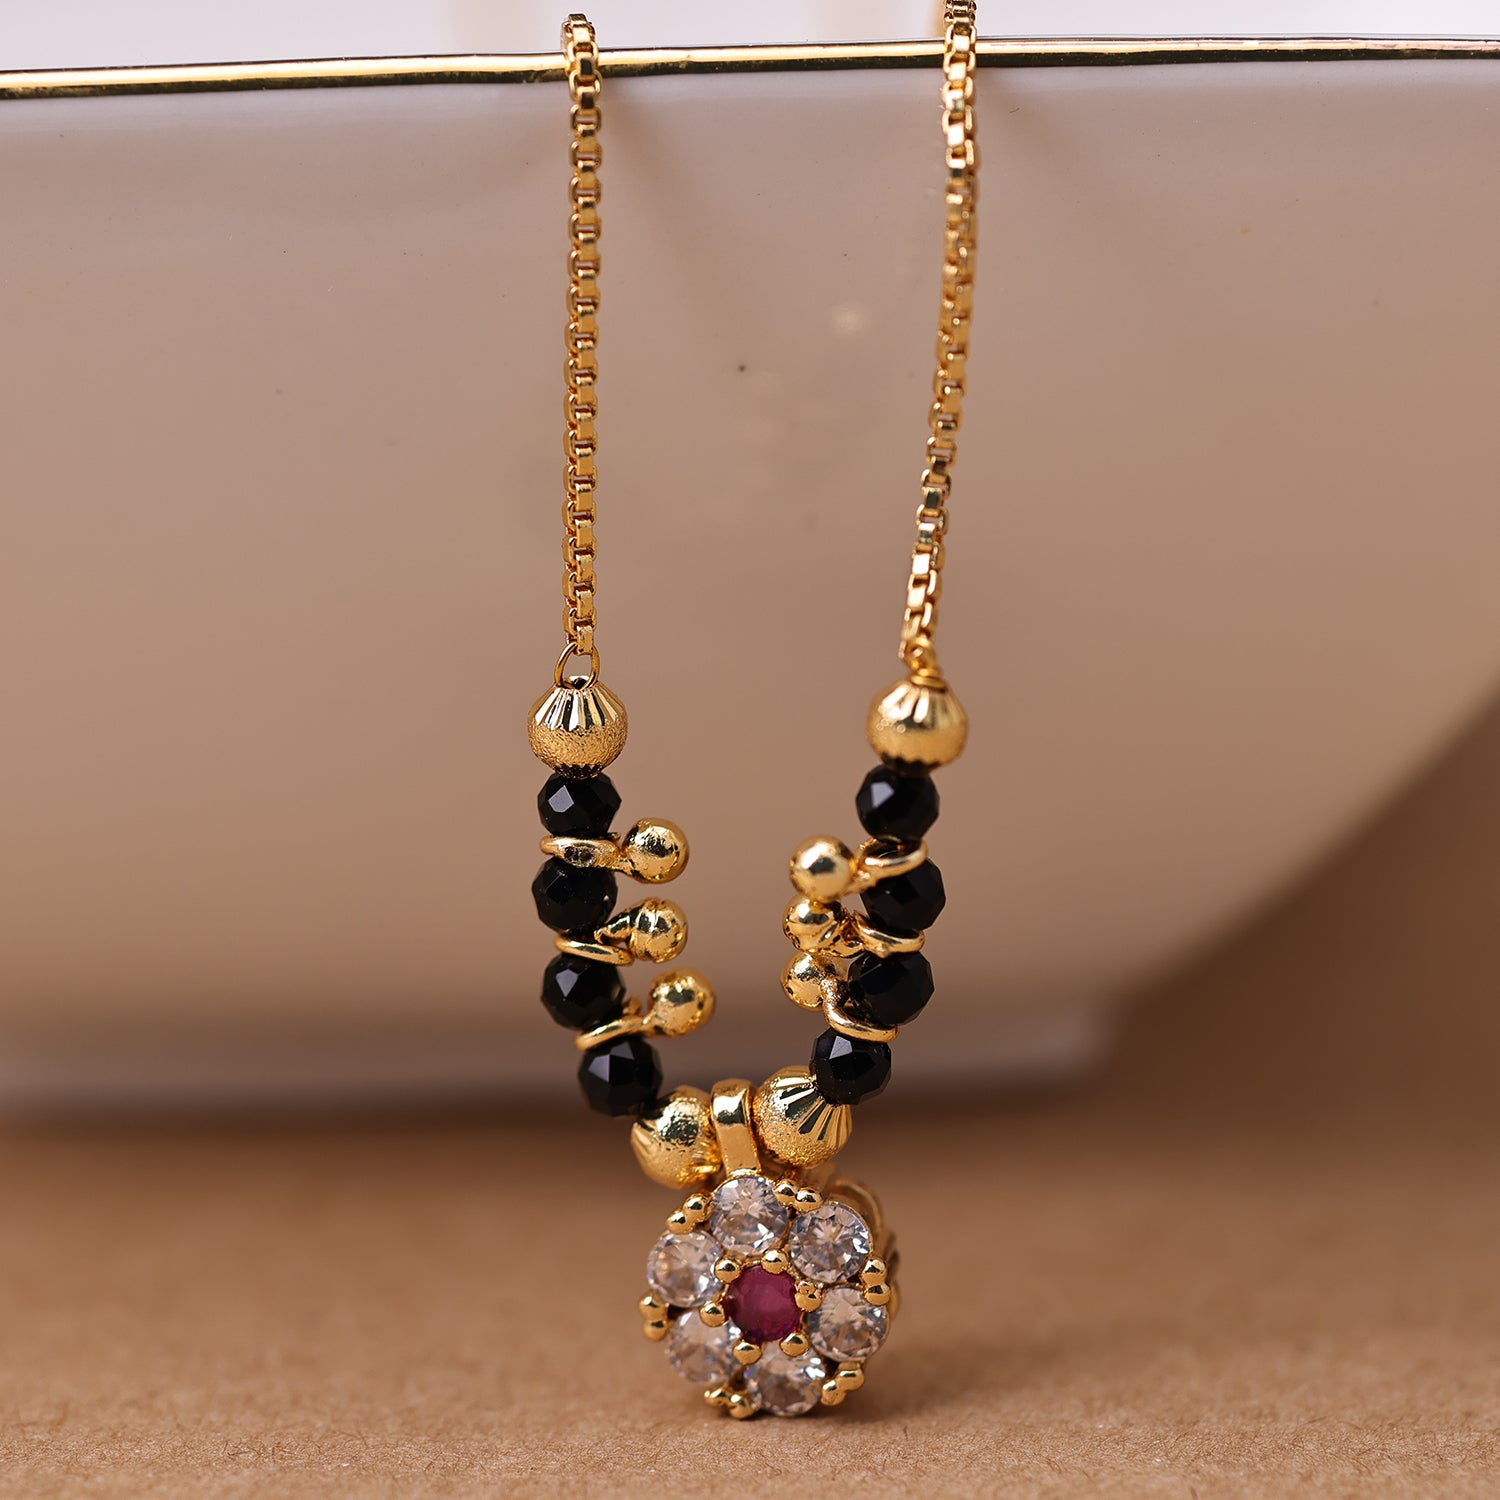 Buy Boho Black Beaded Statement Necklace Online. – Odette